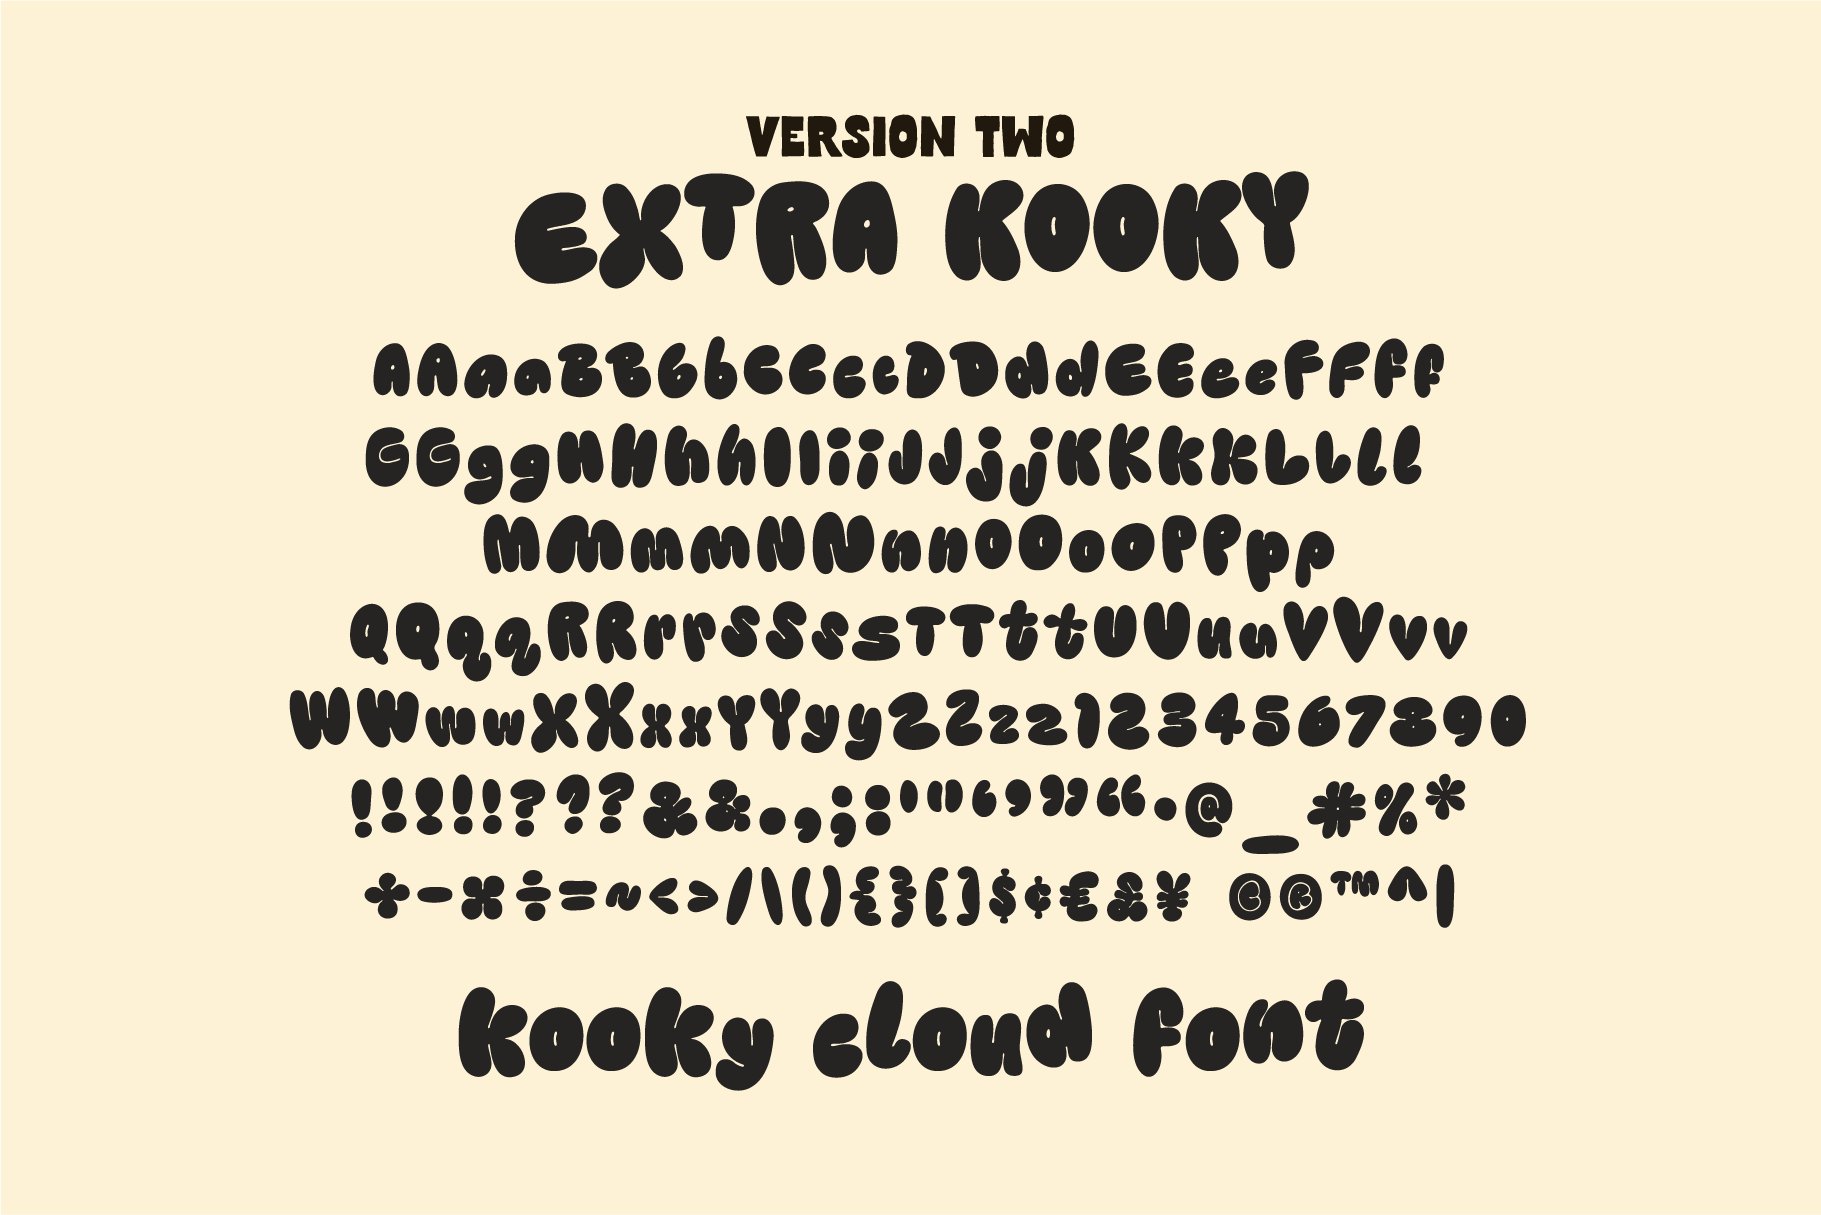 Kooky Cloud Unique Bold Bubble Font Masterbundles